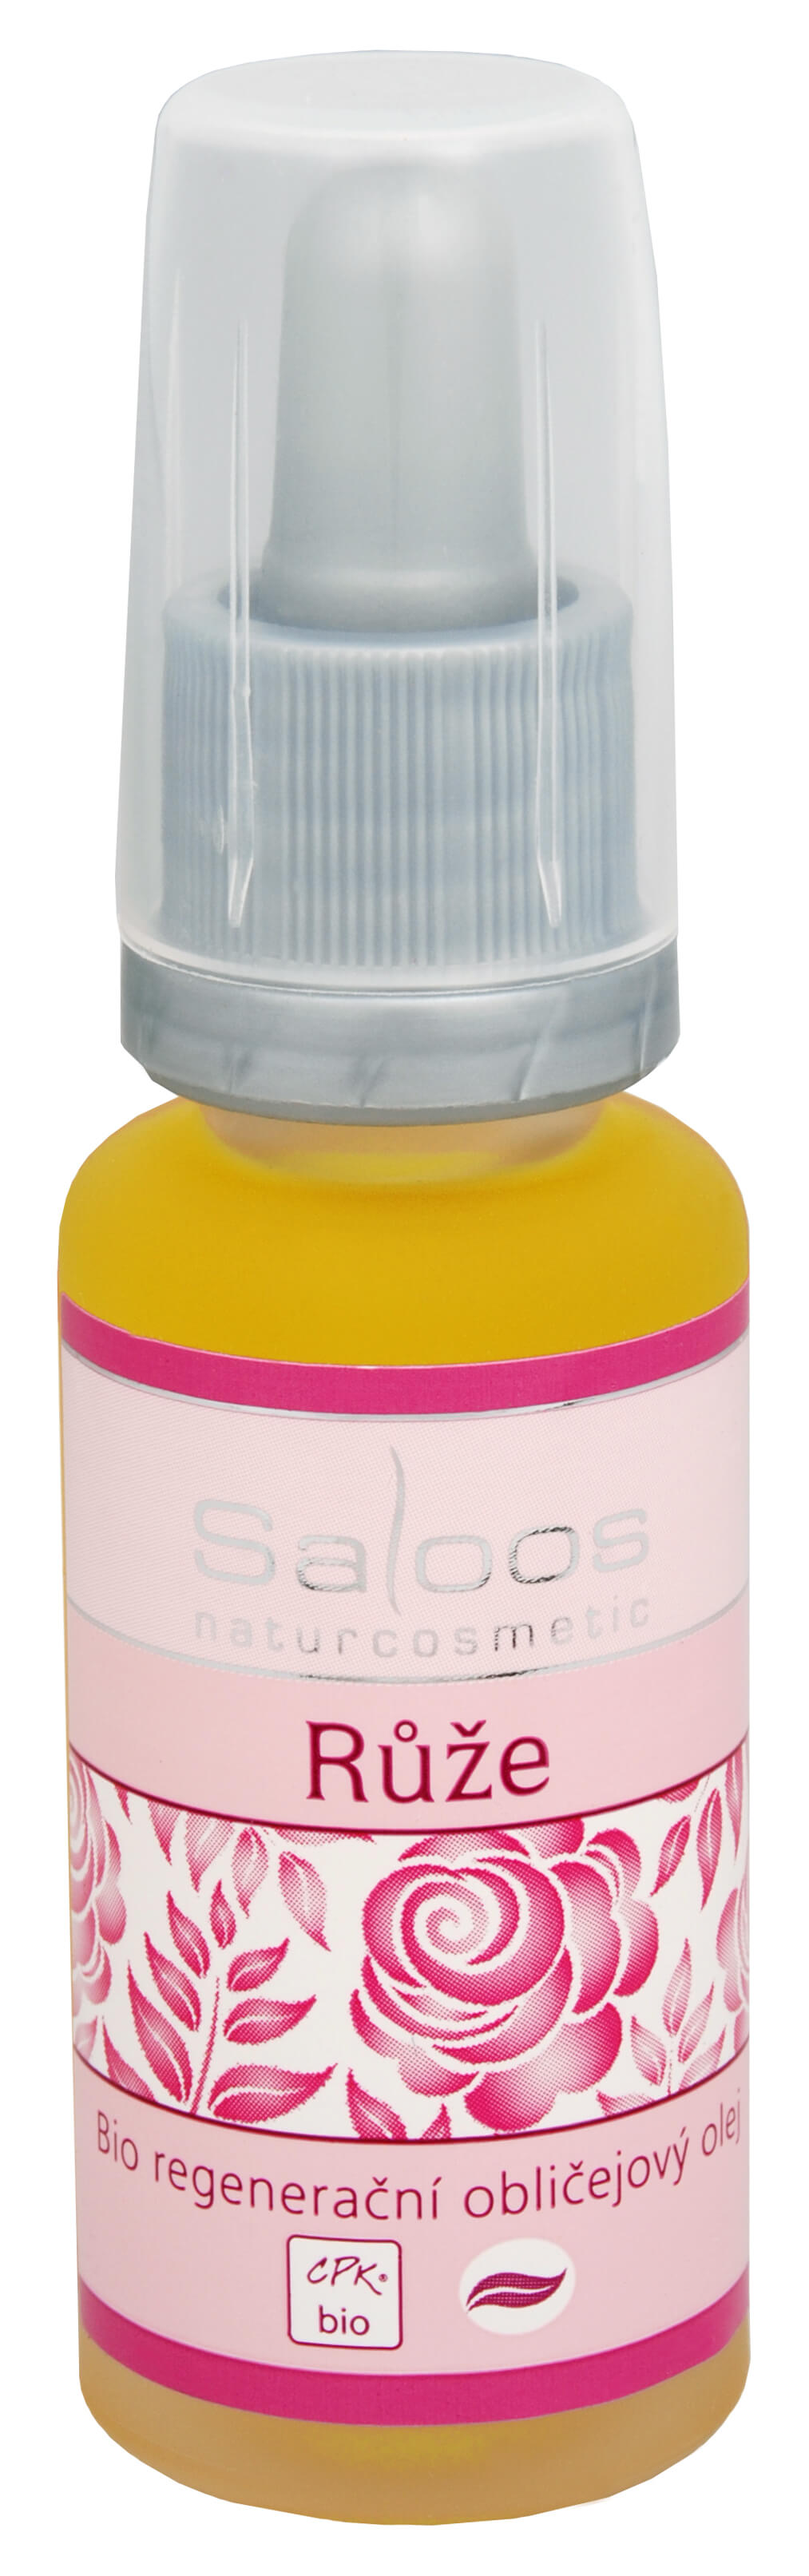 Saloos Bio regenerační obličejový olej - Růže 100 ml